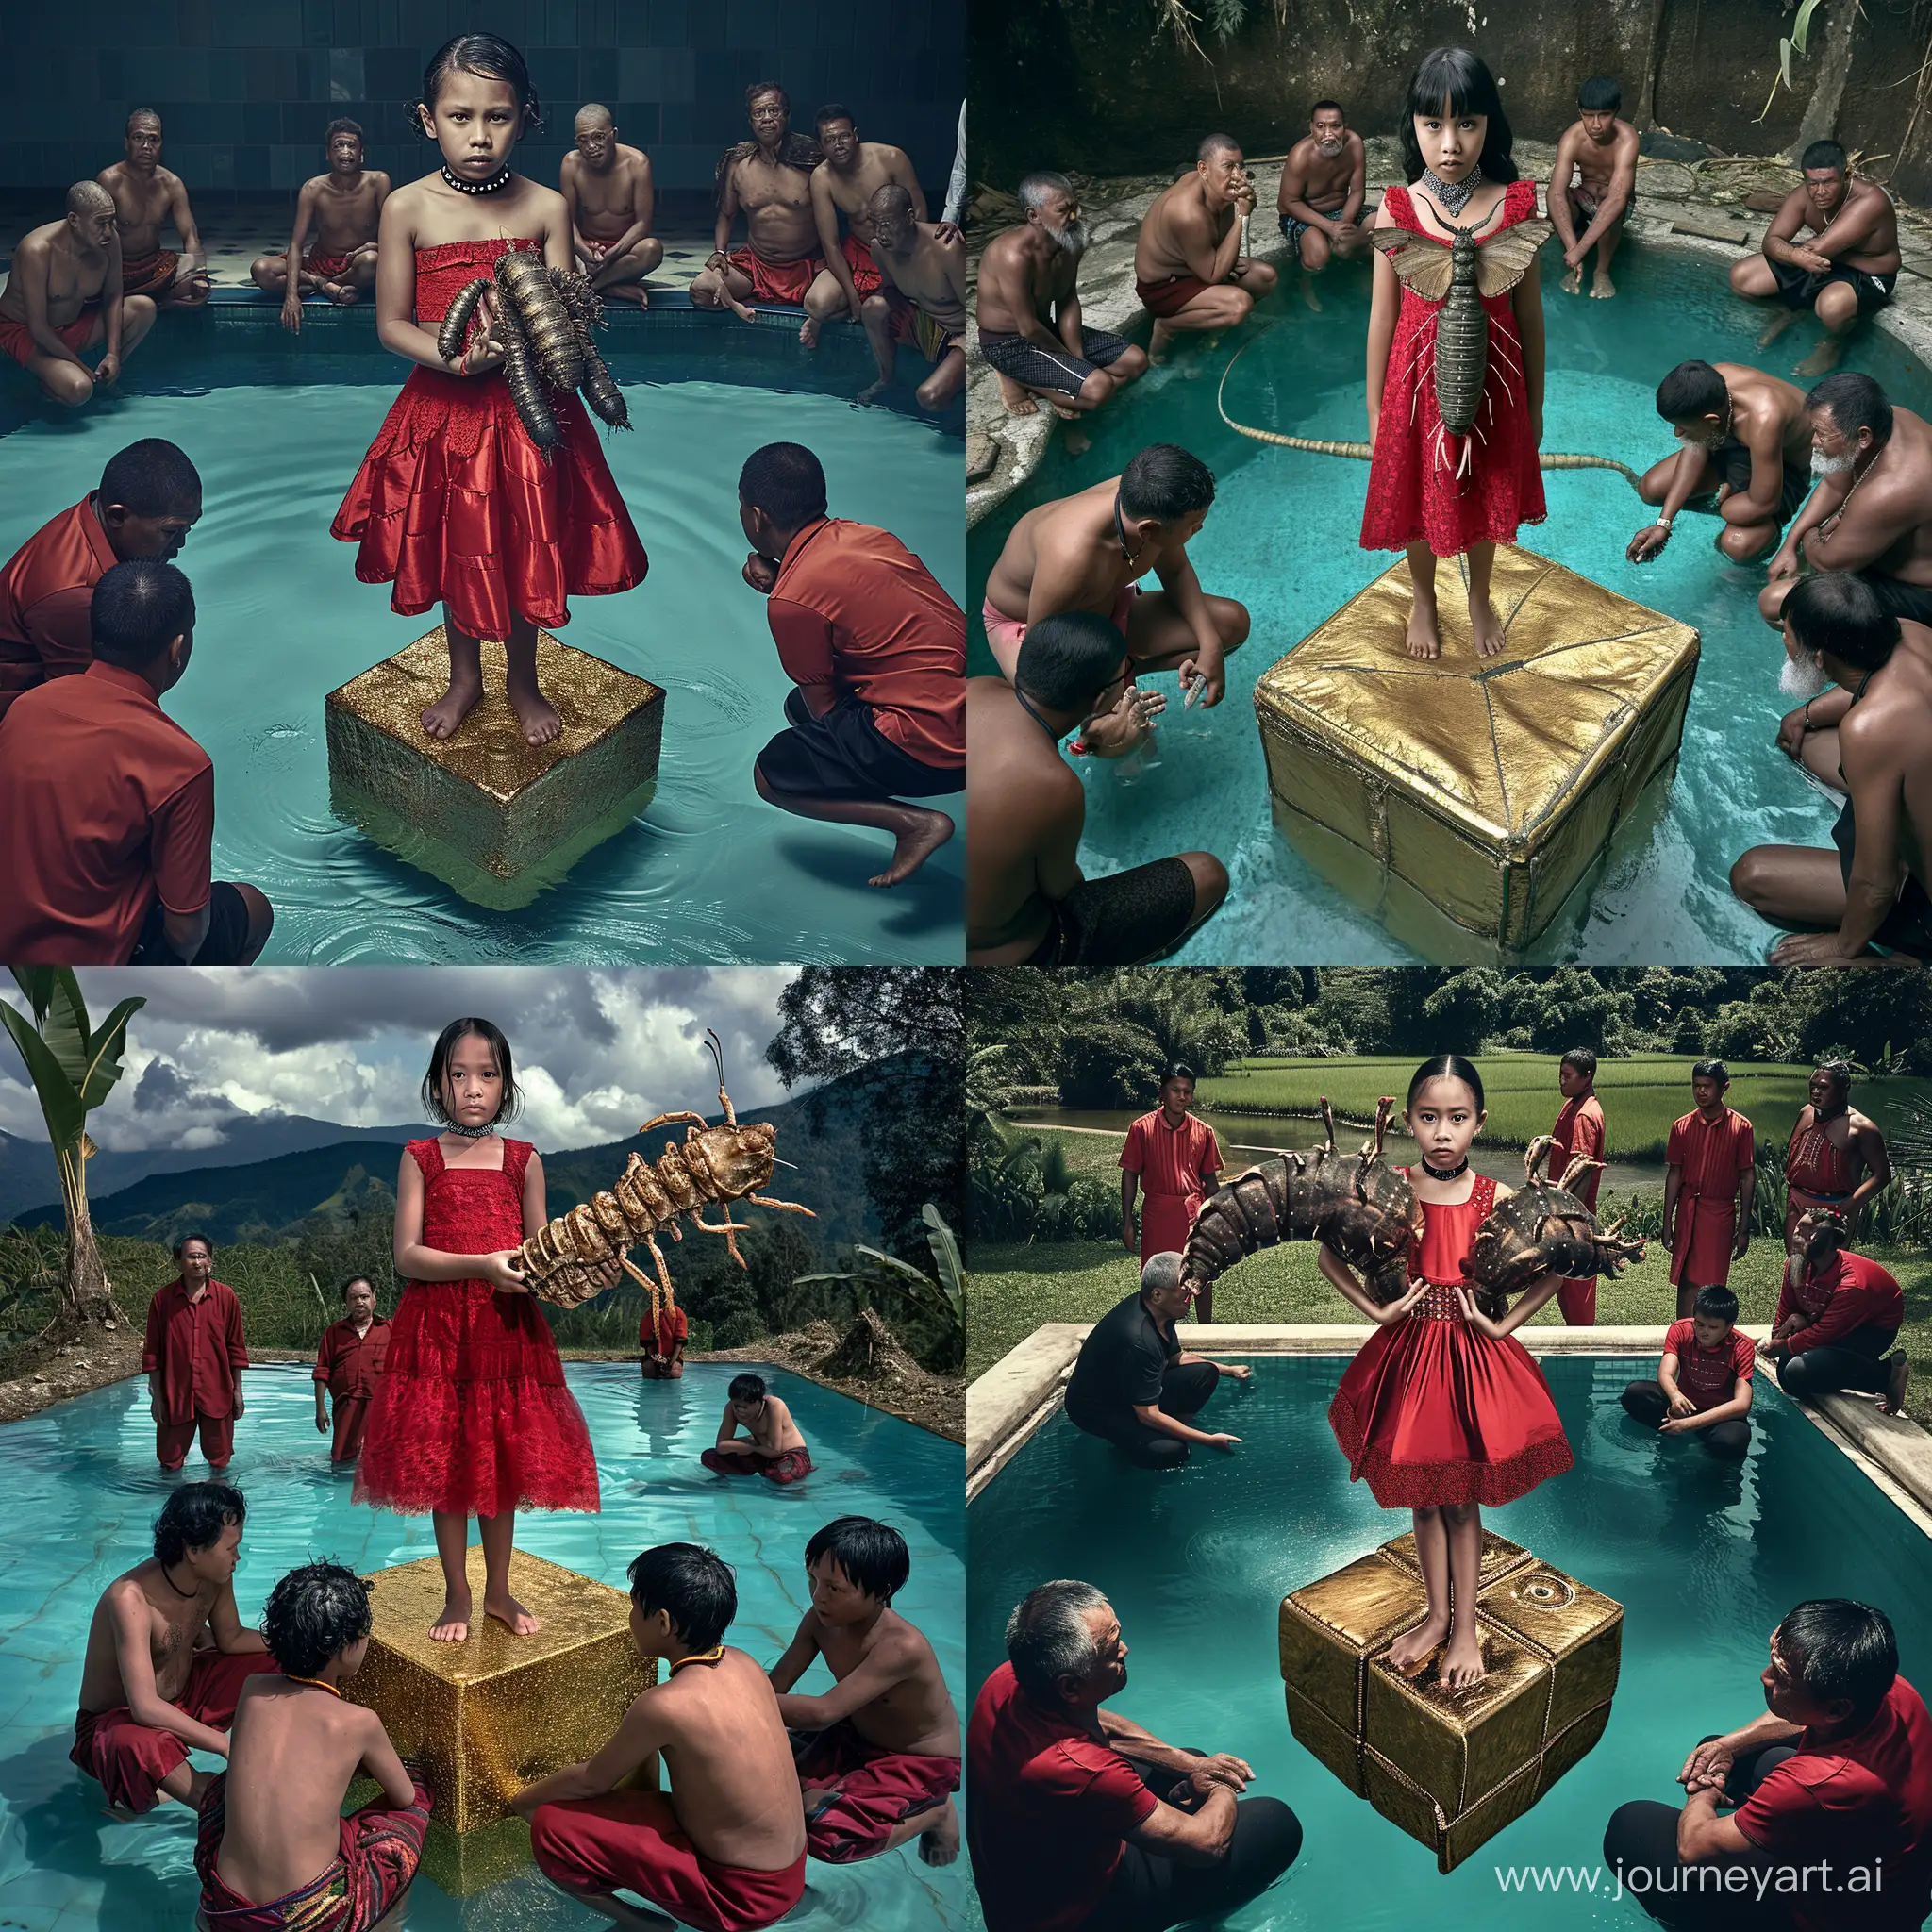 фотография 12-летней девочки в полный рост в красном платье, с чокером, стоящей на большом золотом кубе в бассейне. вокруг бассейна на коленях стоят мужчины папуасы.  девочка держит на руках огромную личинку бабочки